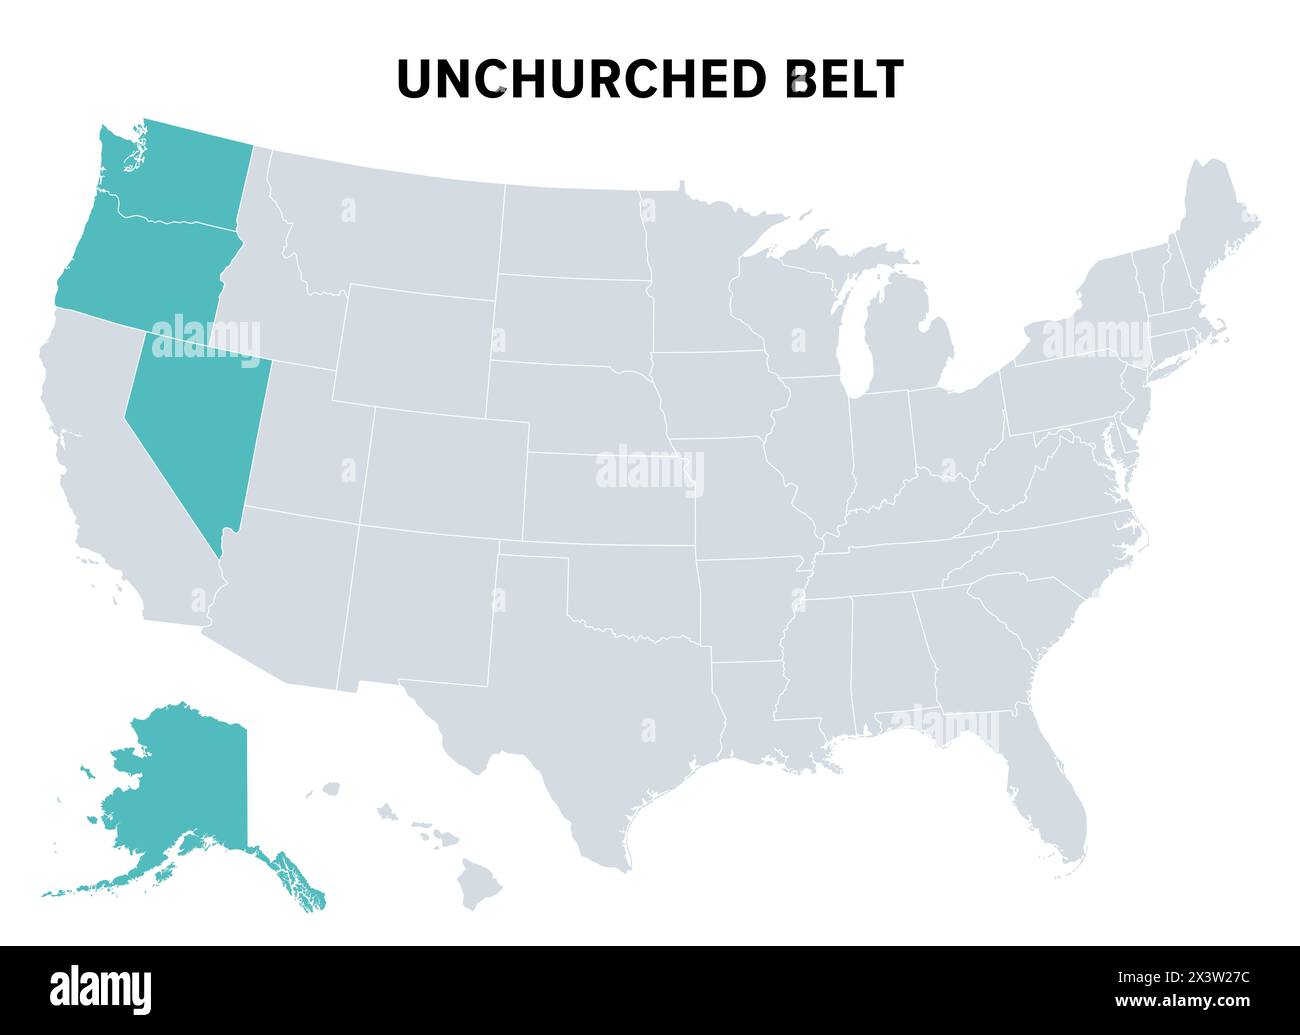 Unchurched Belt, eine Region im Nordwesten der Vereinigten Staaten, politische Karte. Region mit der niedrigsten Rate religiöser Beteiligung. Stockfoto